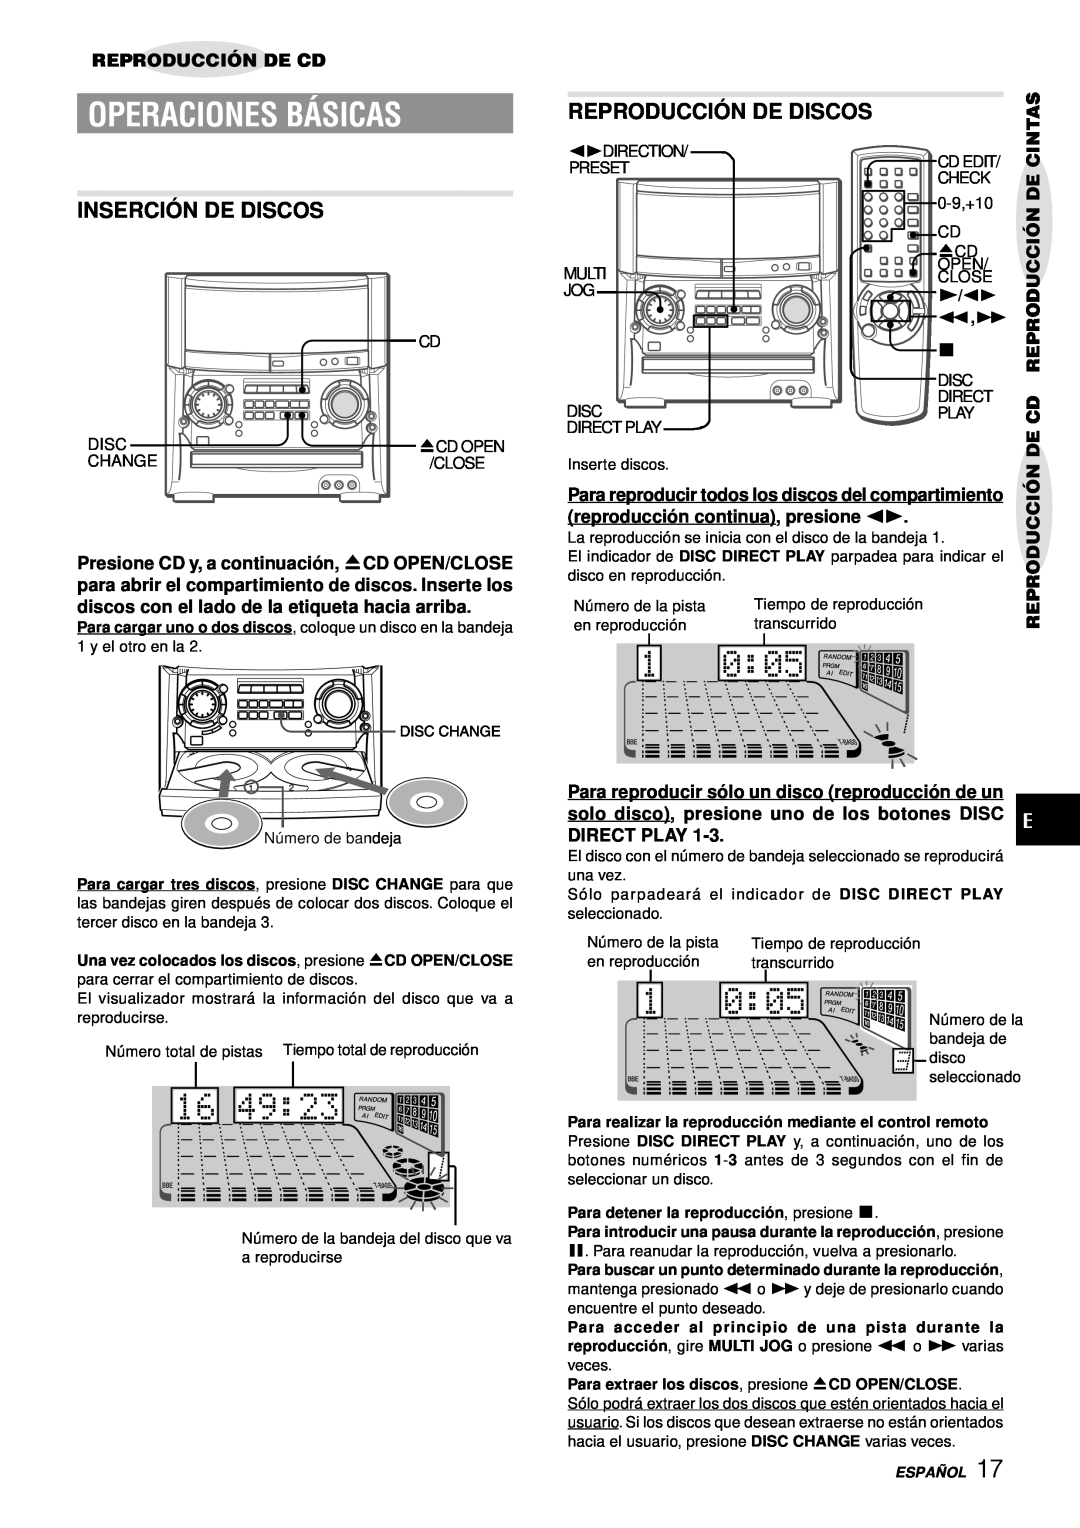 Aiwa XH-A1000 manual Inserció N De Discos, Reproducció N De Discos, Reproducción De Cd, Cintas, Operaciones Básicas 